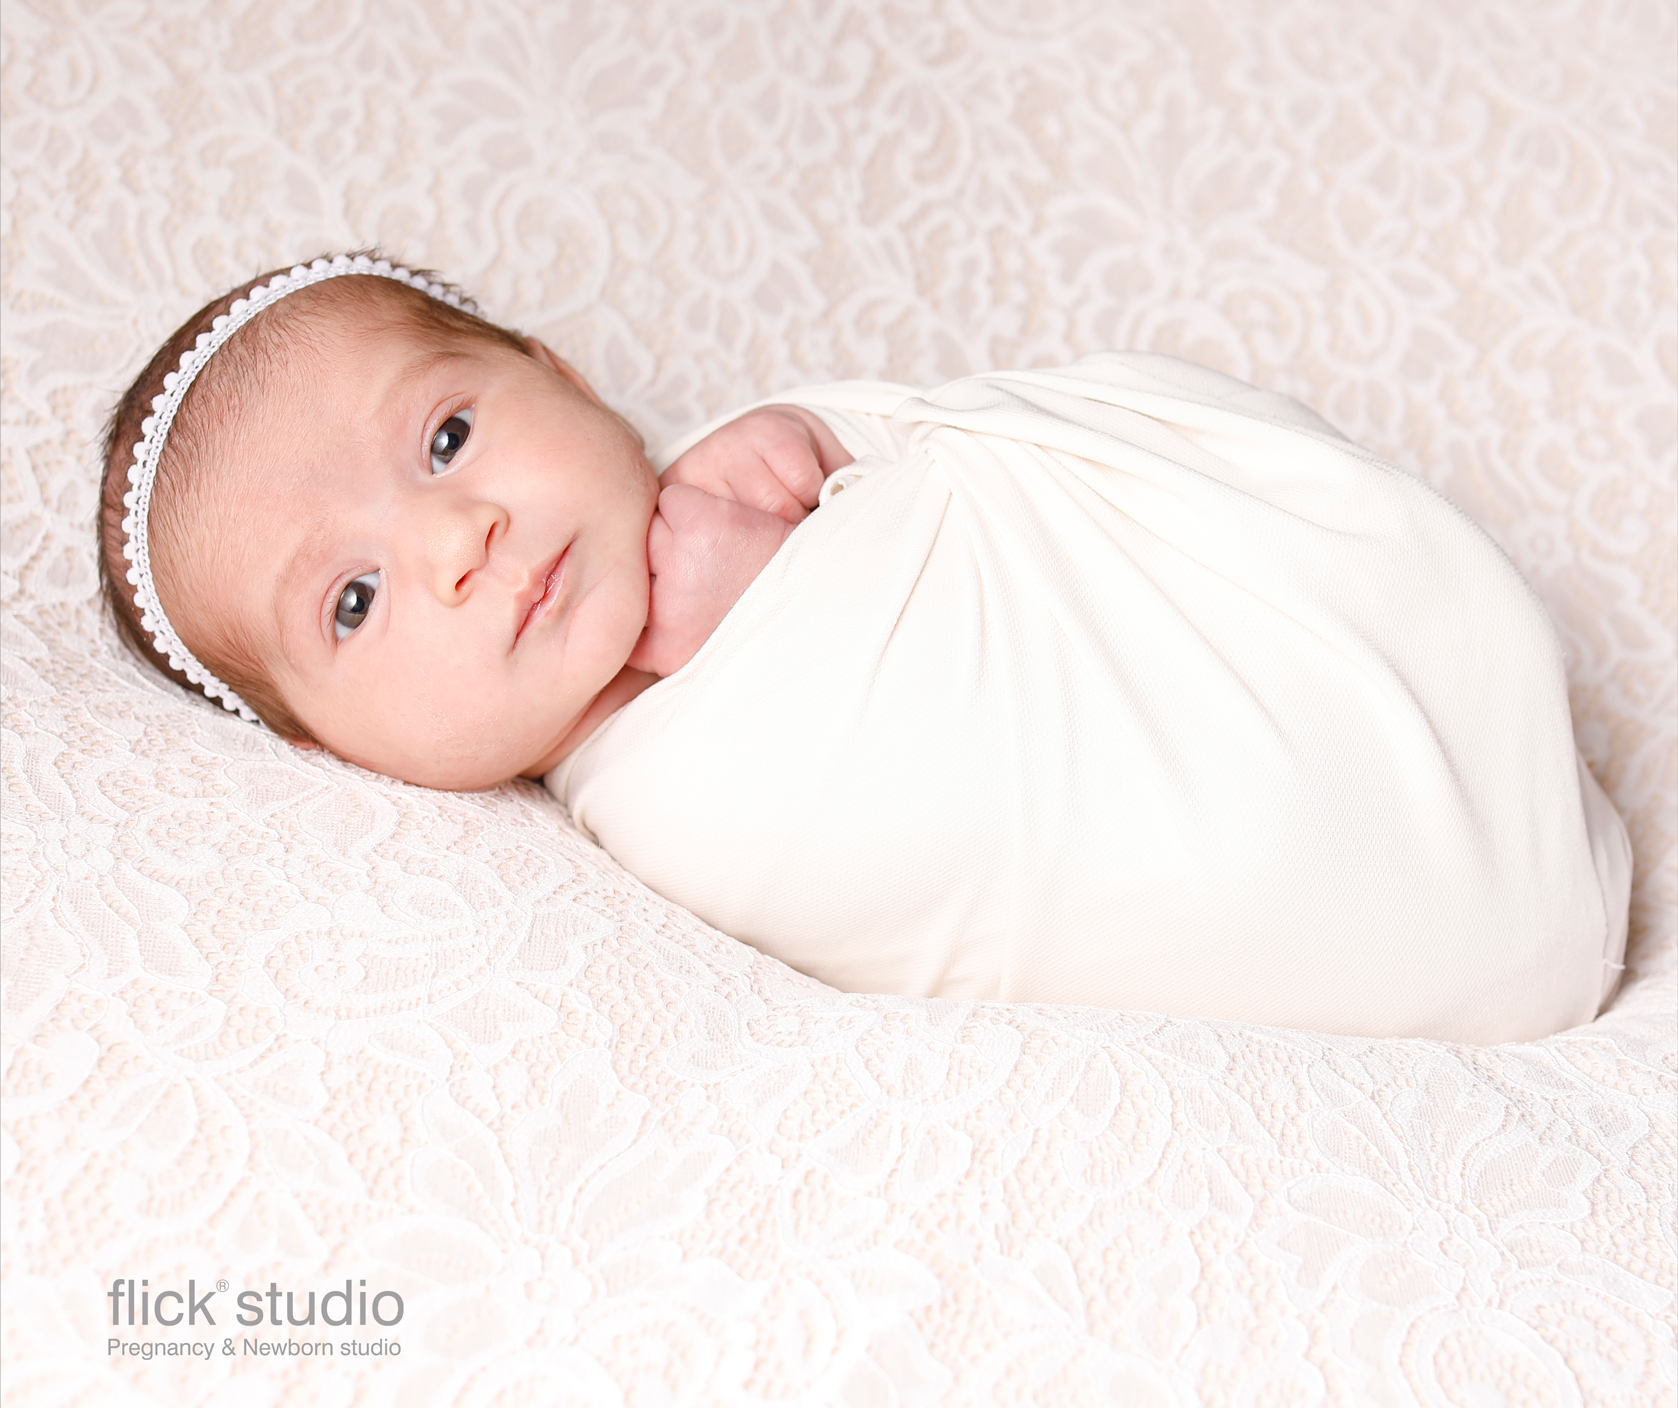 بهترین زمان برای عکاسی از دوران نوزادی بازه 7 تا 15 روزگی میباشد.